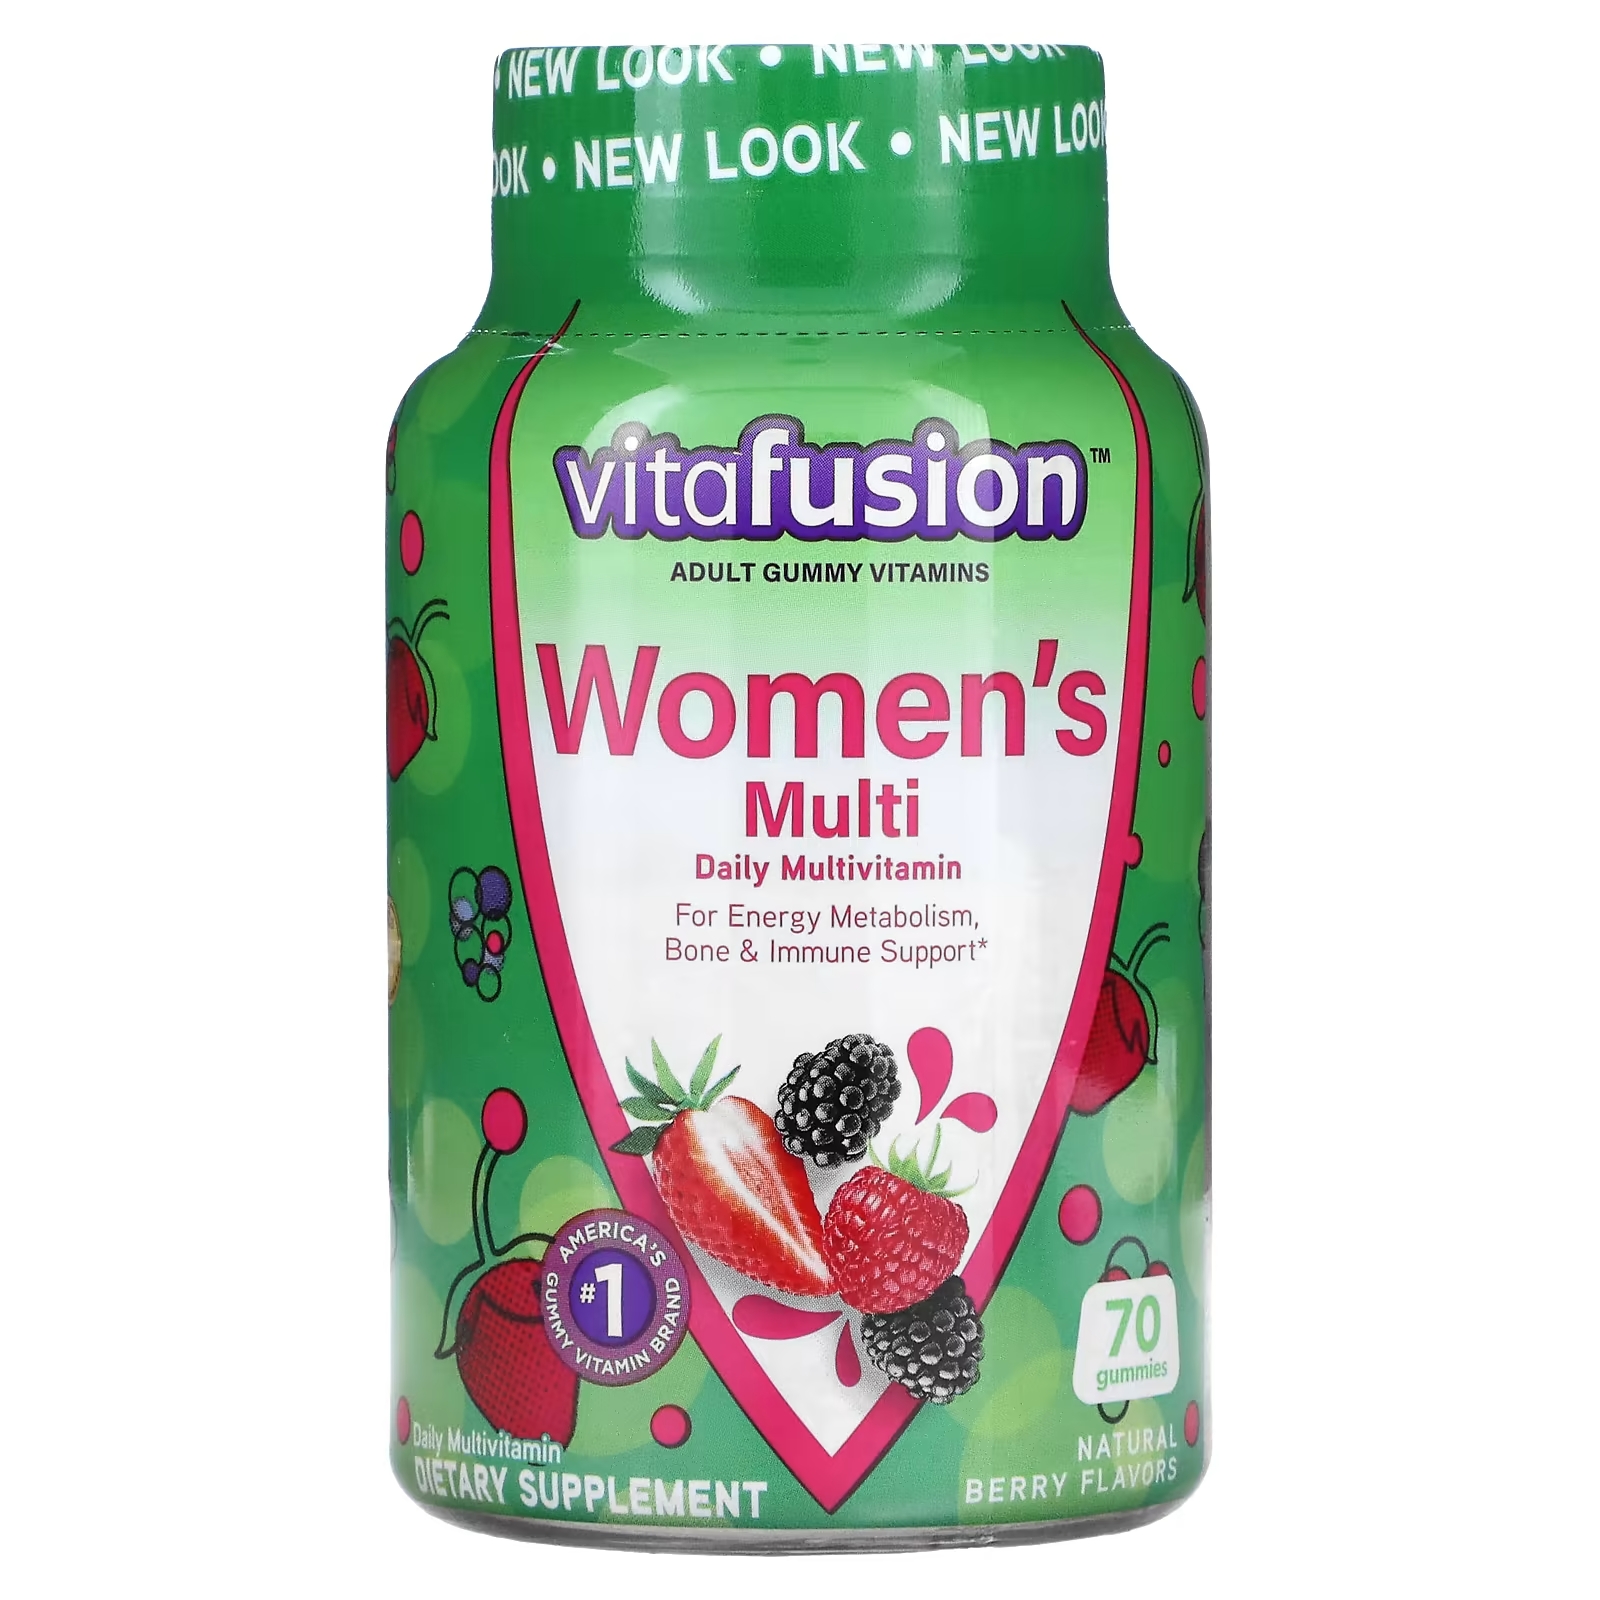 Мультивитаминный Комплекс для Женщин VitaFusion, вкус натуральных ягод, 70 жевательных таблеток мультивитаминный комплекс для женщин vitafusion вкус натуральных ягод 70 жевательных таблеток